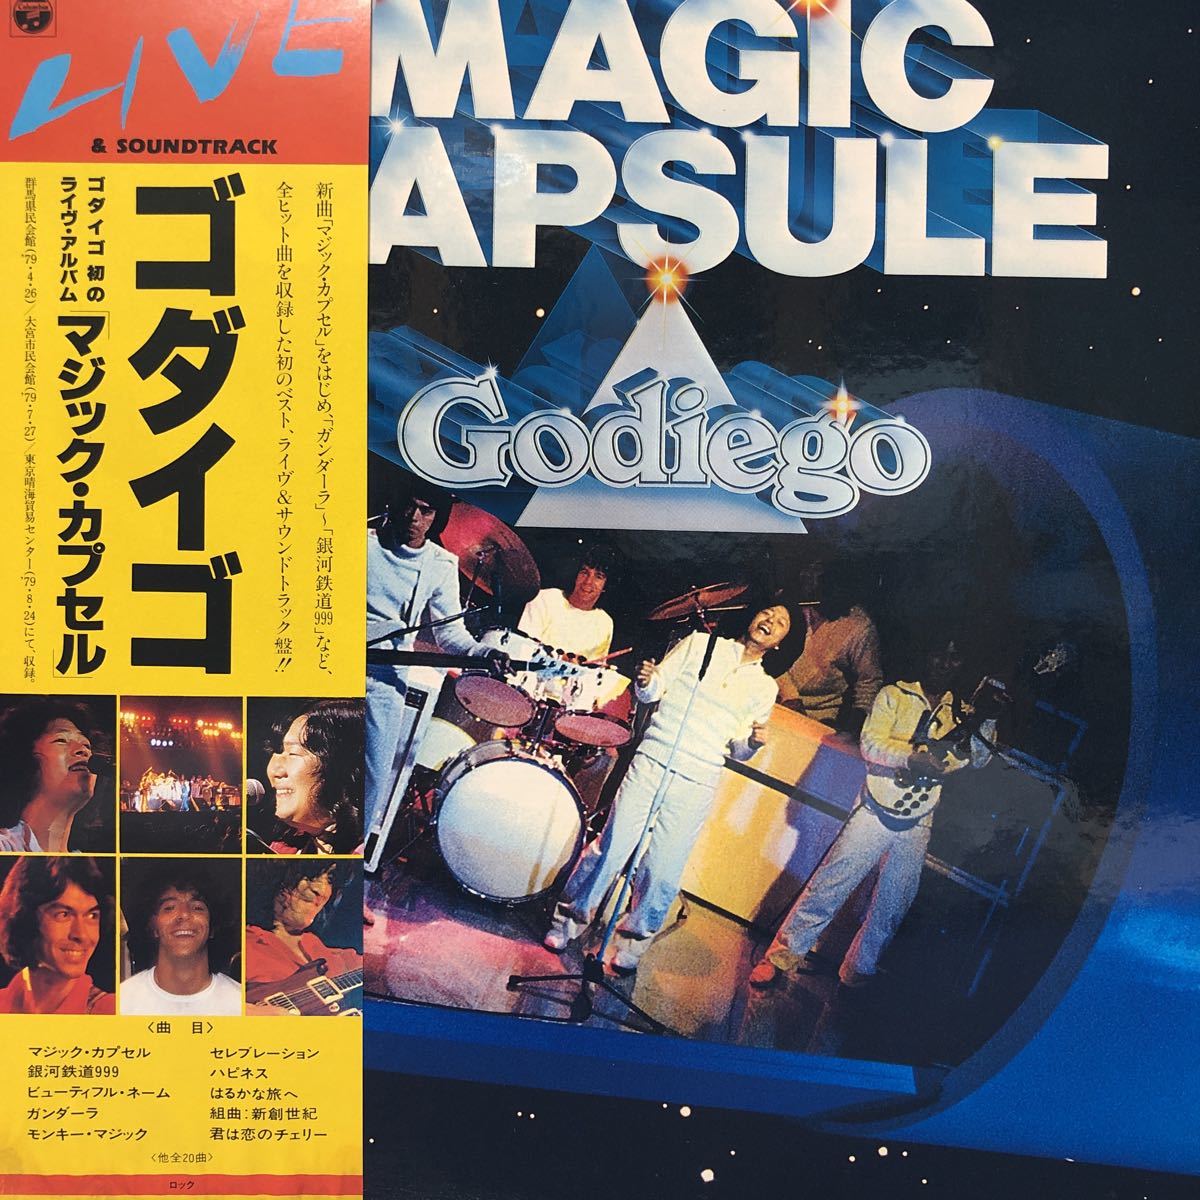 Два -диск Godigo Godiego Magic Capsule Monkey Monkey Micide Micide Micke Yoshino Tomisnider 2LP Records 5 или более успешной заявки на успешную ставку